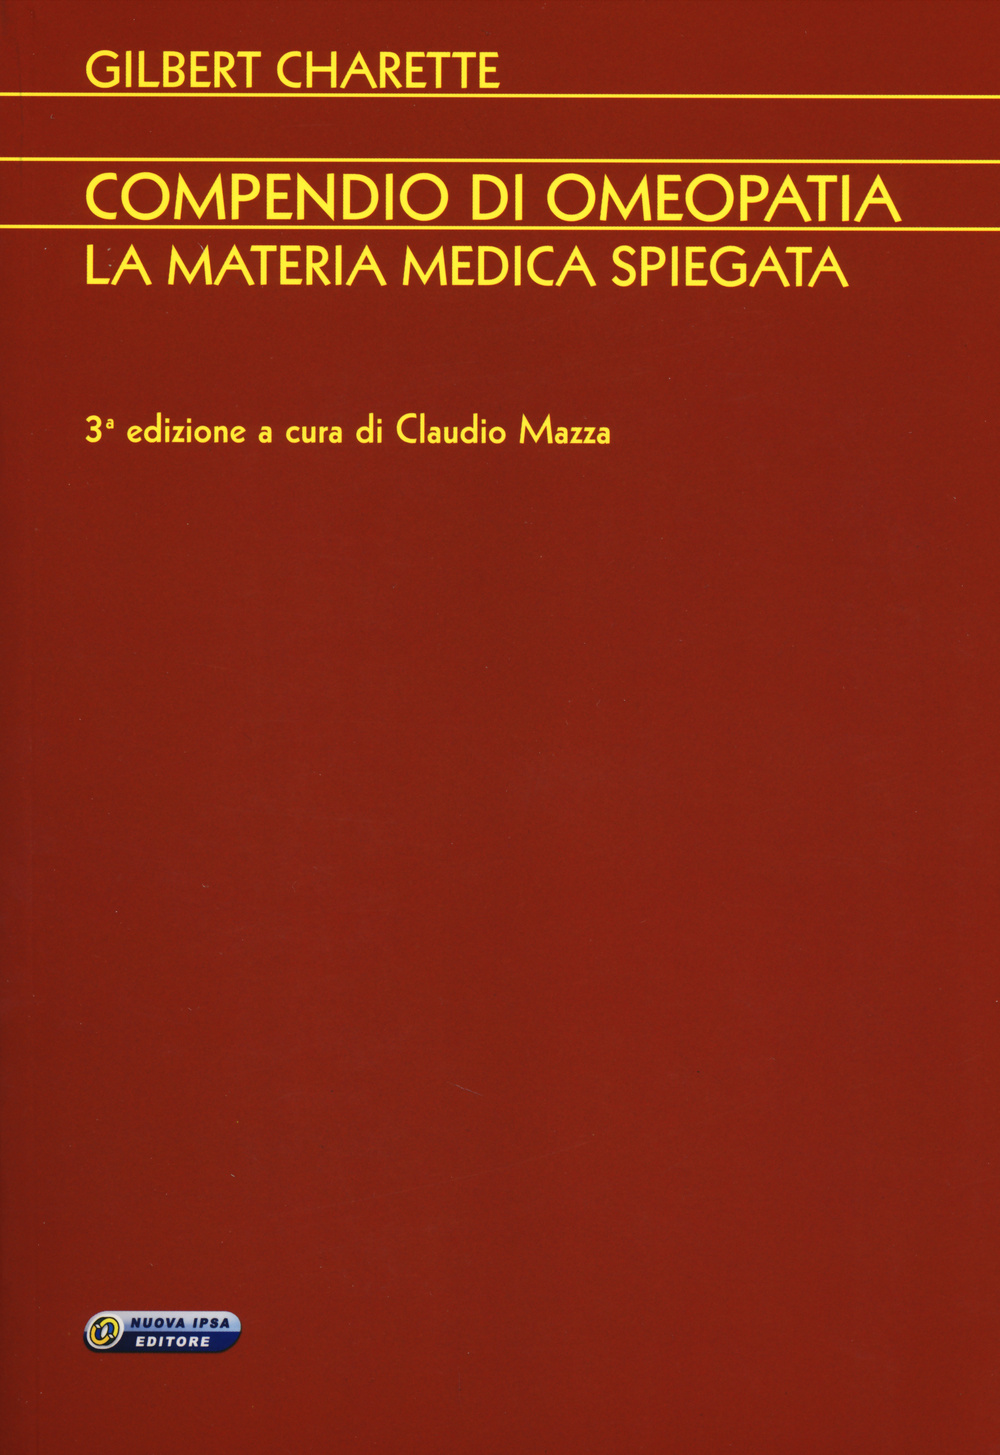 Libri Gilbert Charette - Compendio Di Omeopatia. La Materia Medica Spiegata NUOVO SIGILLATO, EDIZIONE DEL 28/05/2014 SUBITO DISPONIBILE